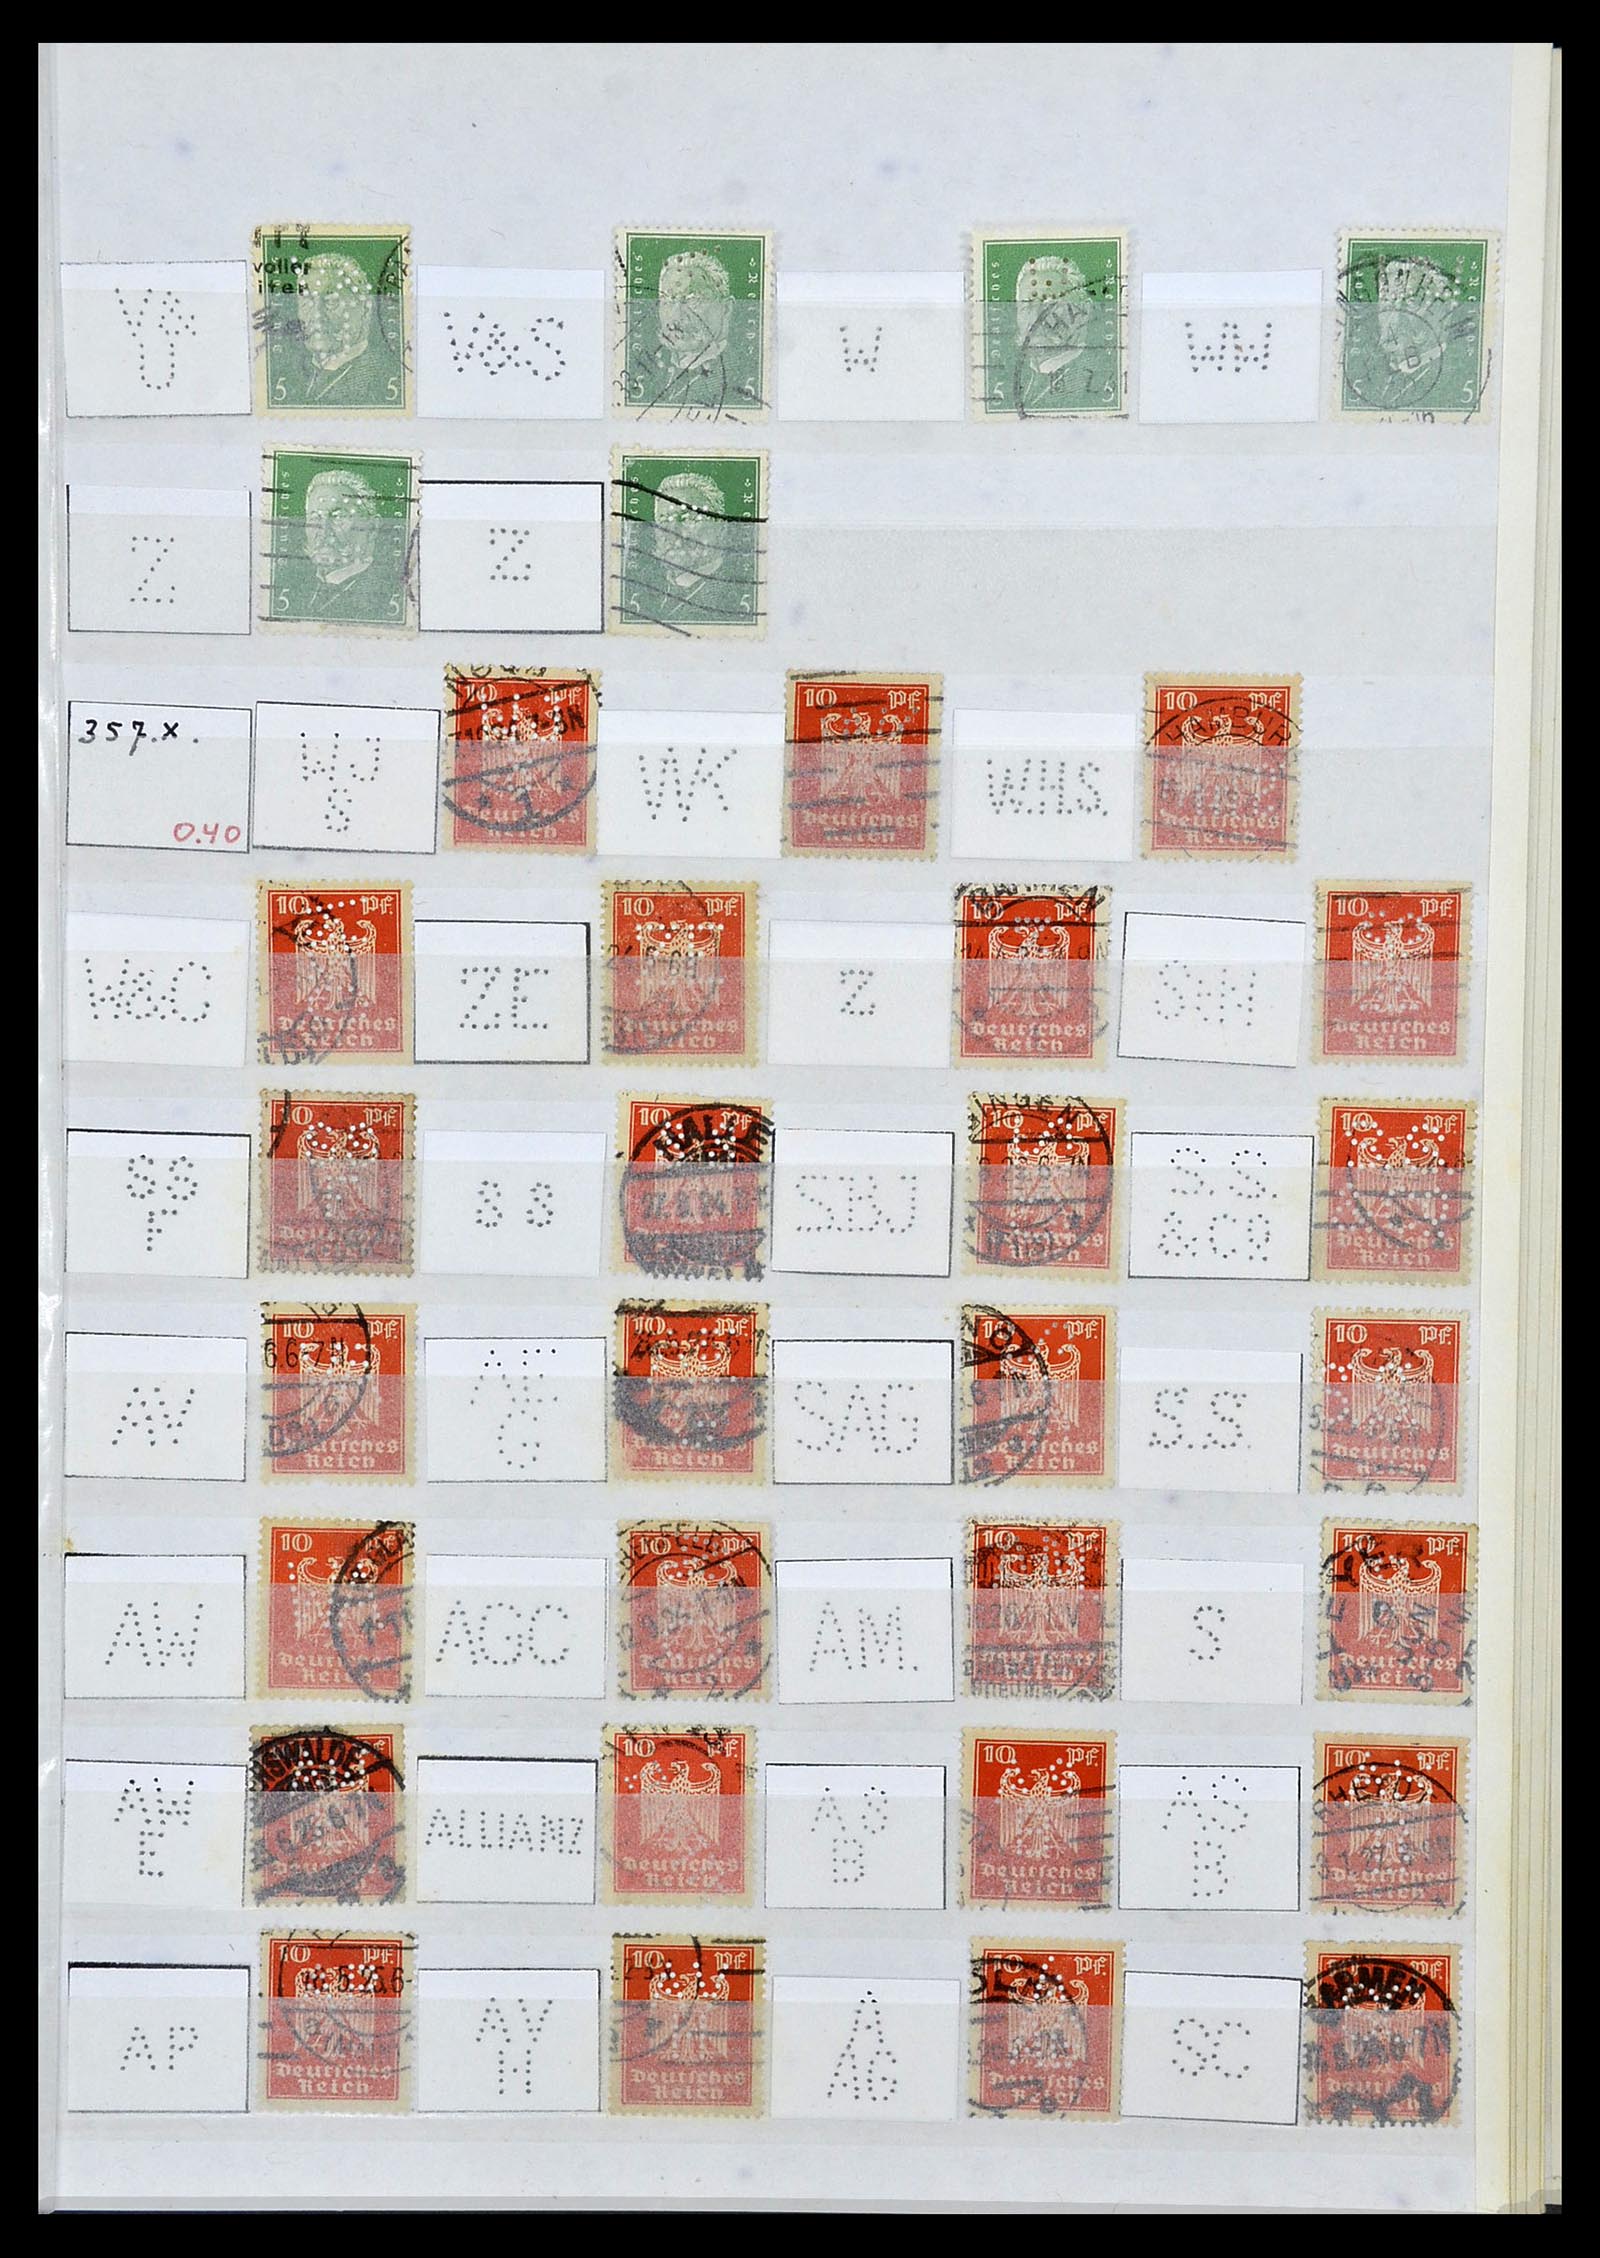 34071 023 - Stamp collection 34071 German Reich perfins 1923-1930.